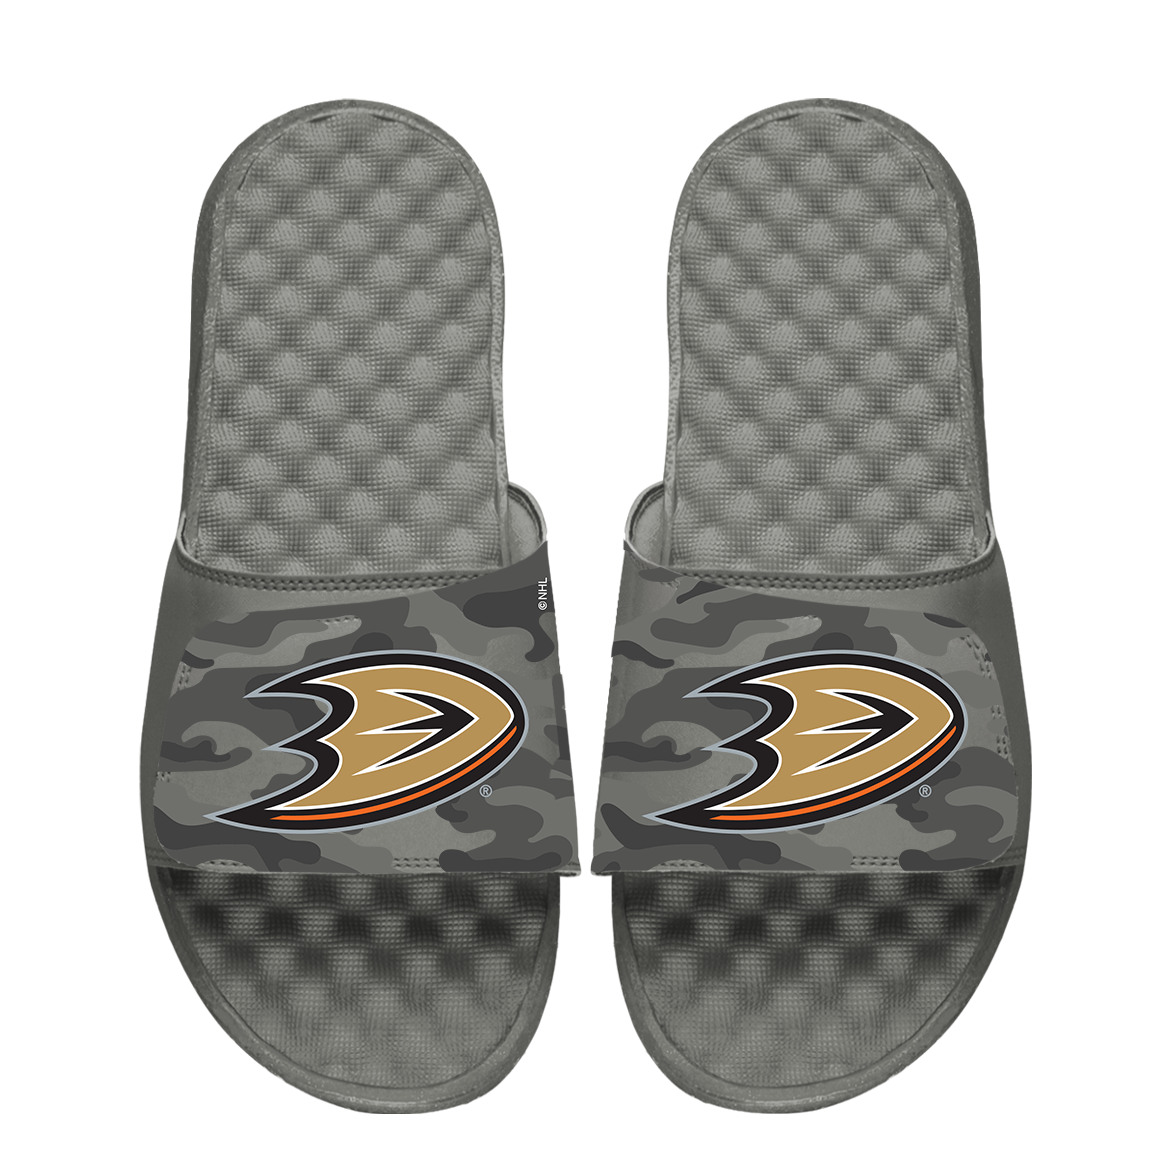 Anaheim Ducks Urban Camo Slides